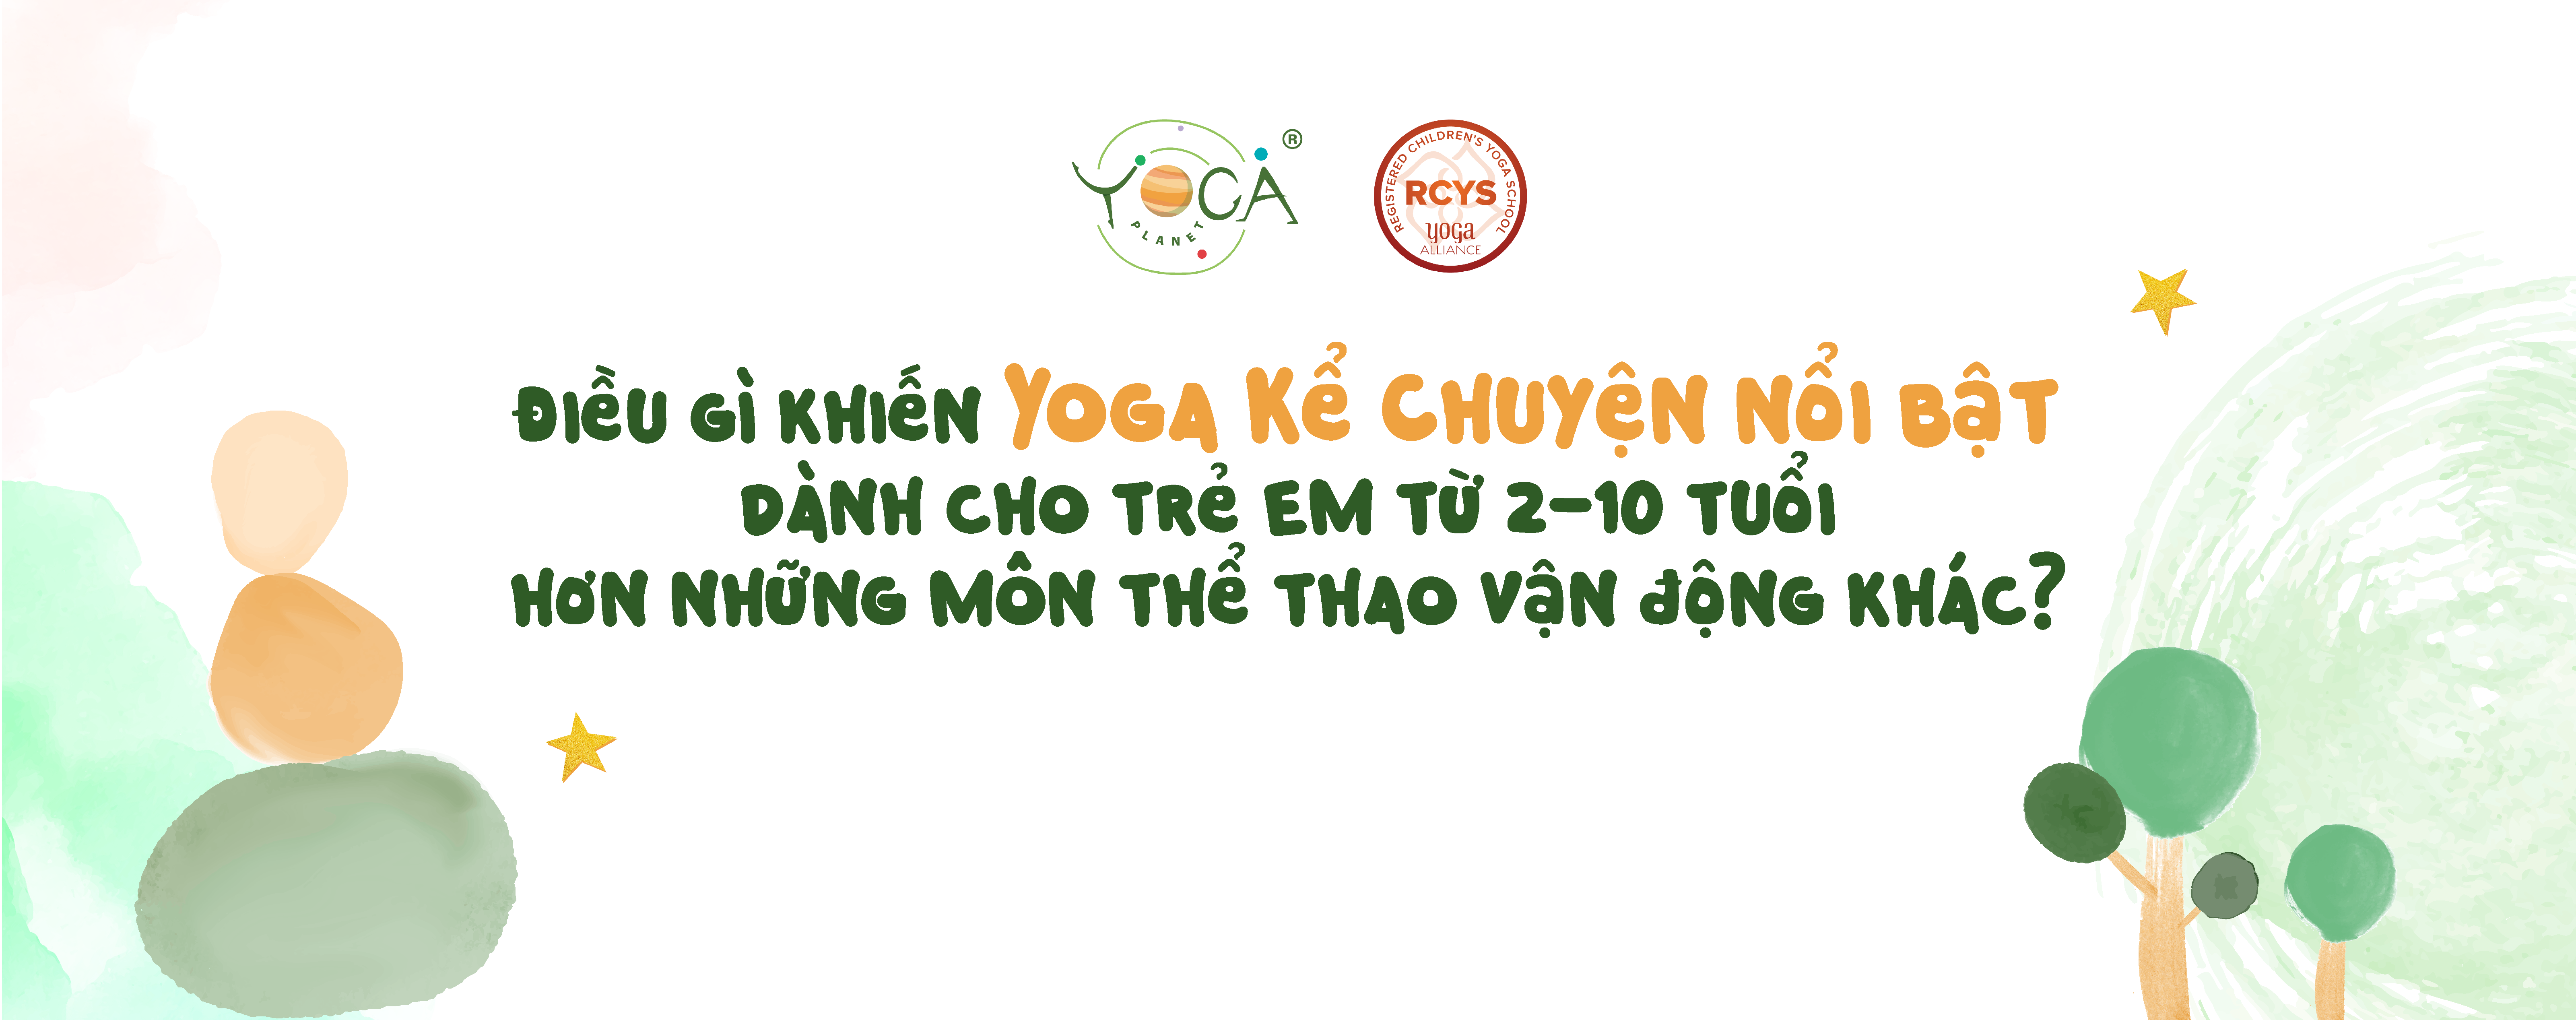 Chào mừng Yoga Kể Chuyện, Yoga dành cho trẻ 